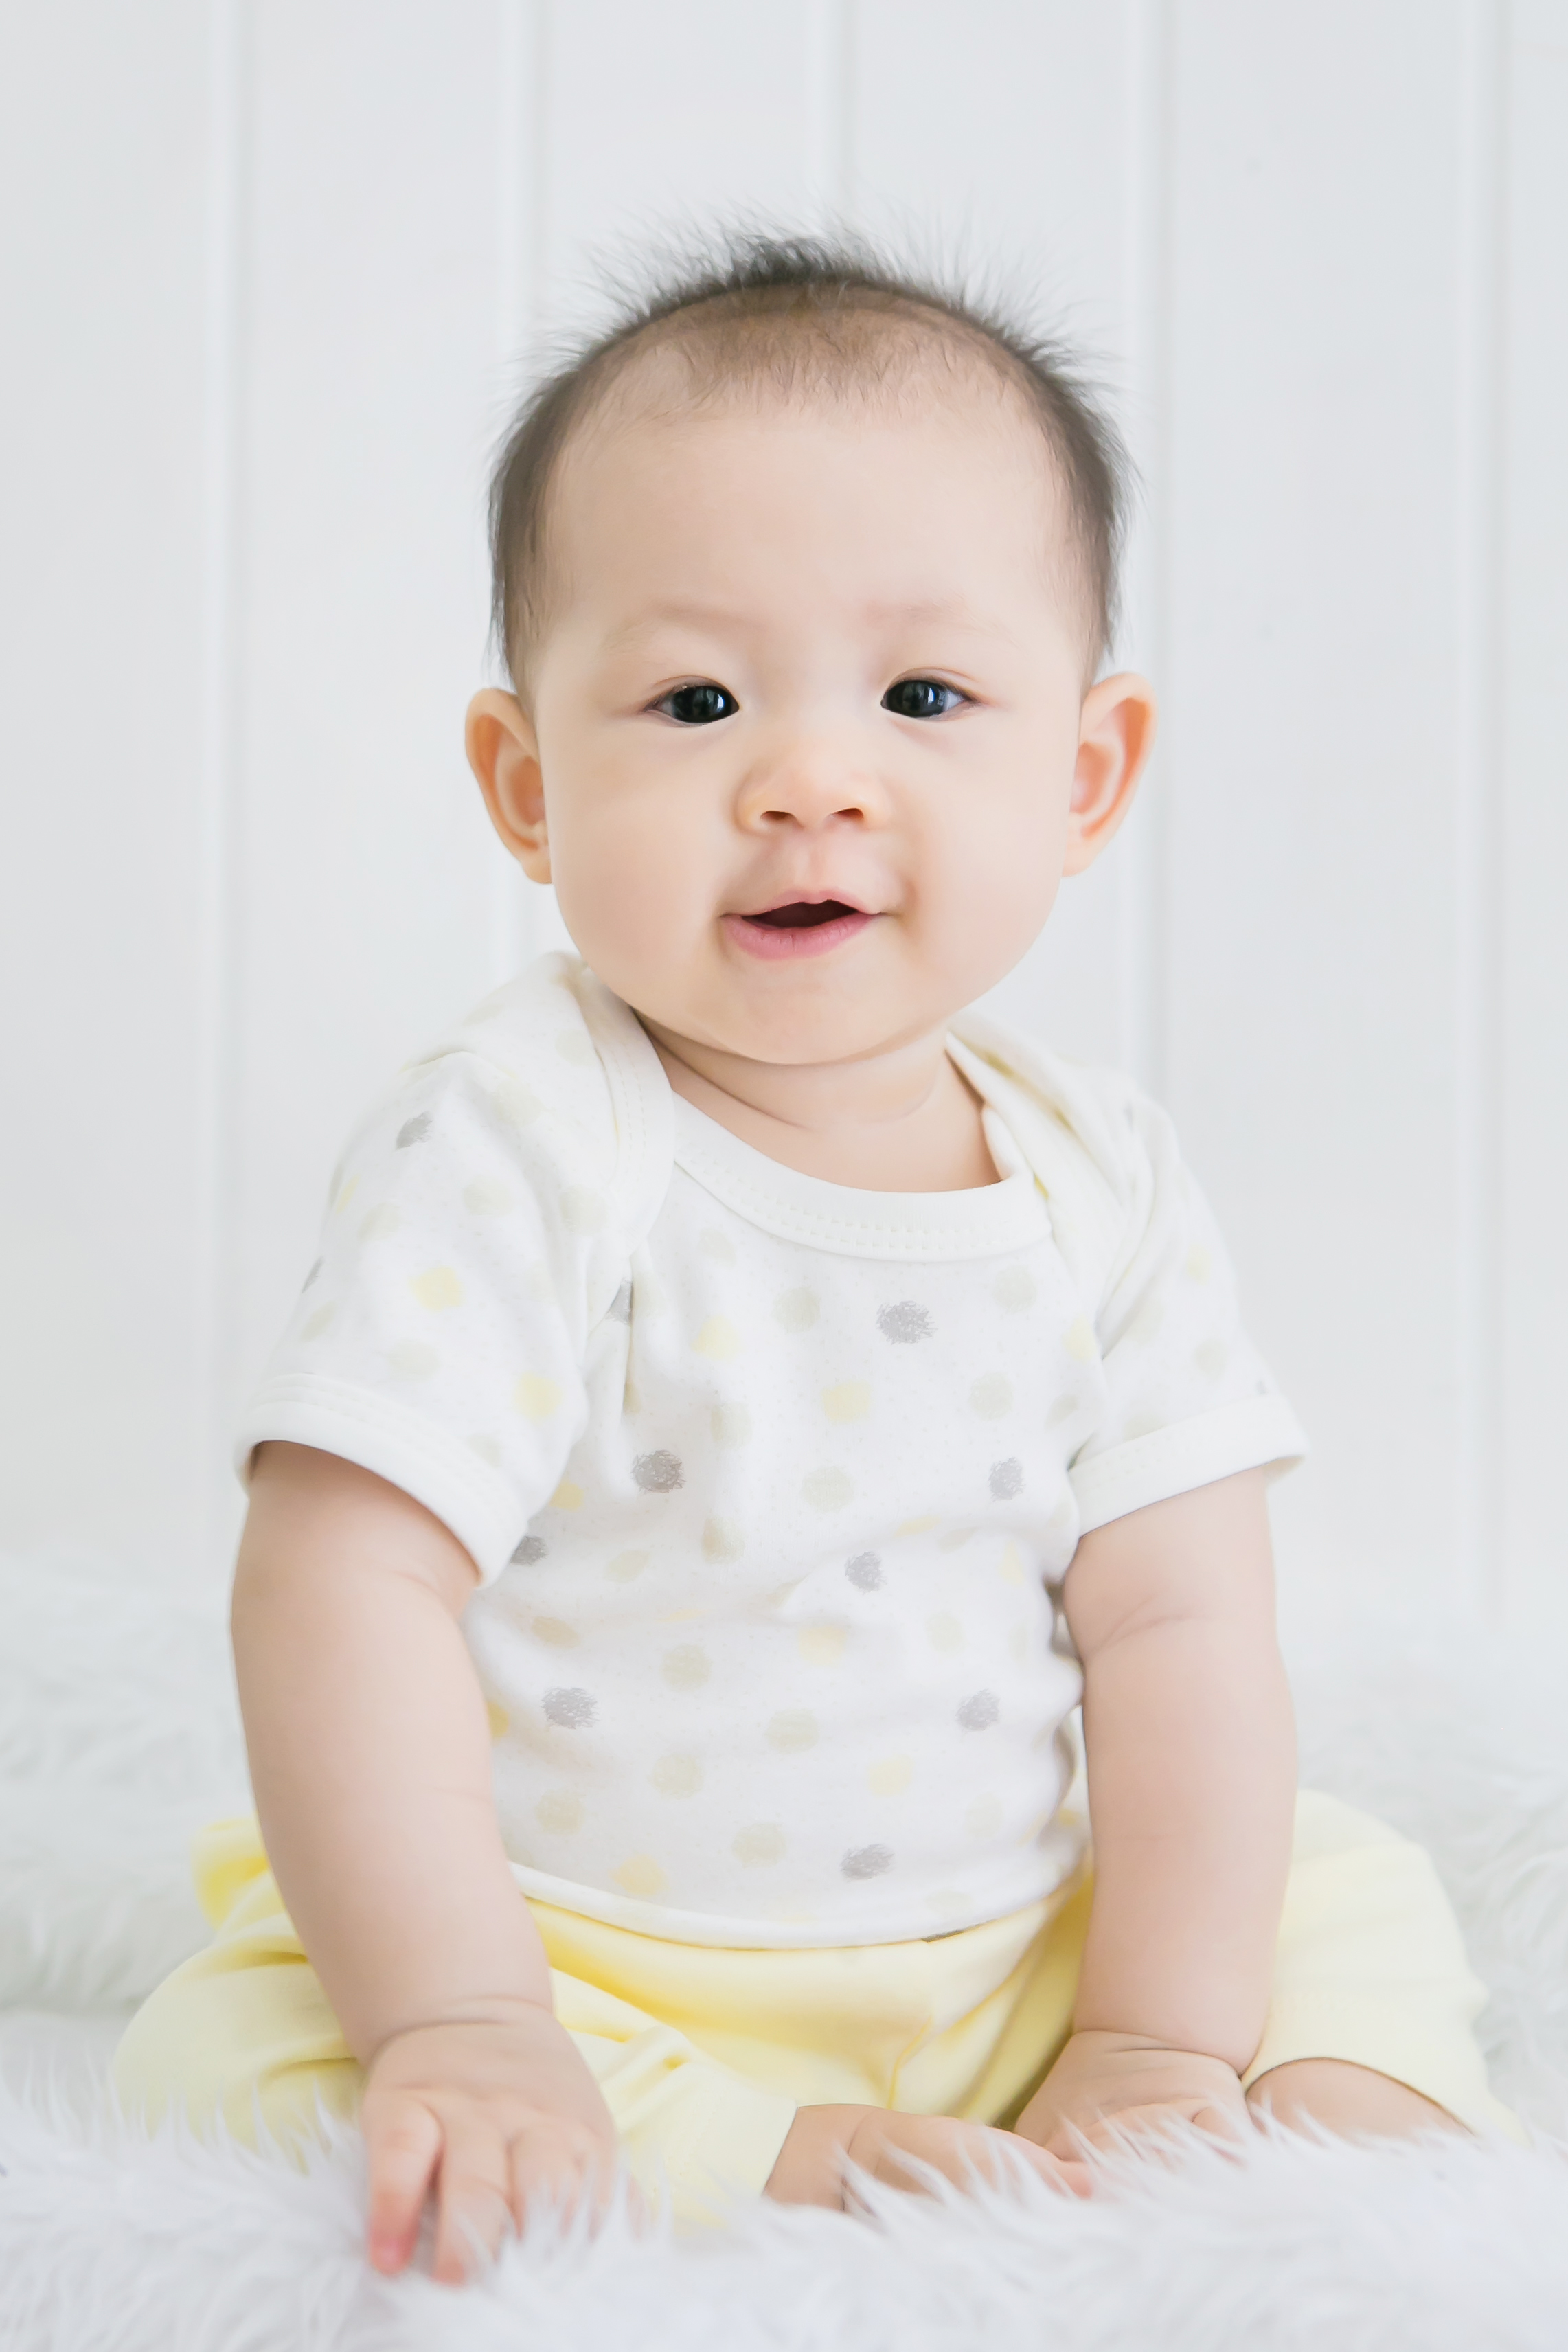 Baby Bright Newborn Baby Boy Clothes Essentials Shower Gift Set - 14 Pieces, 0-3 Months - image 2 of 6